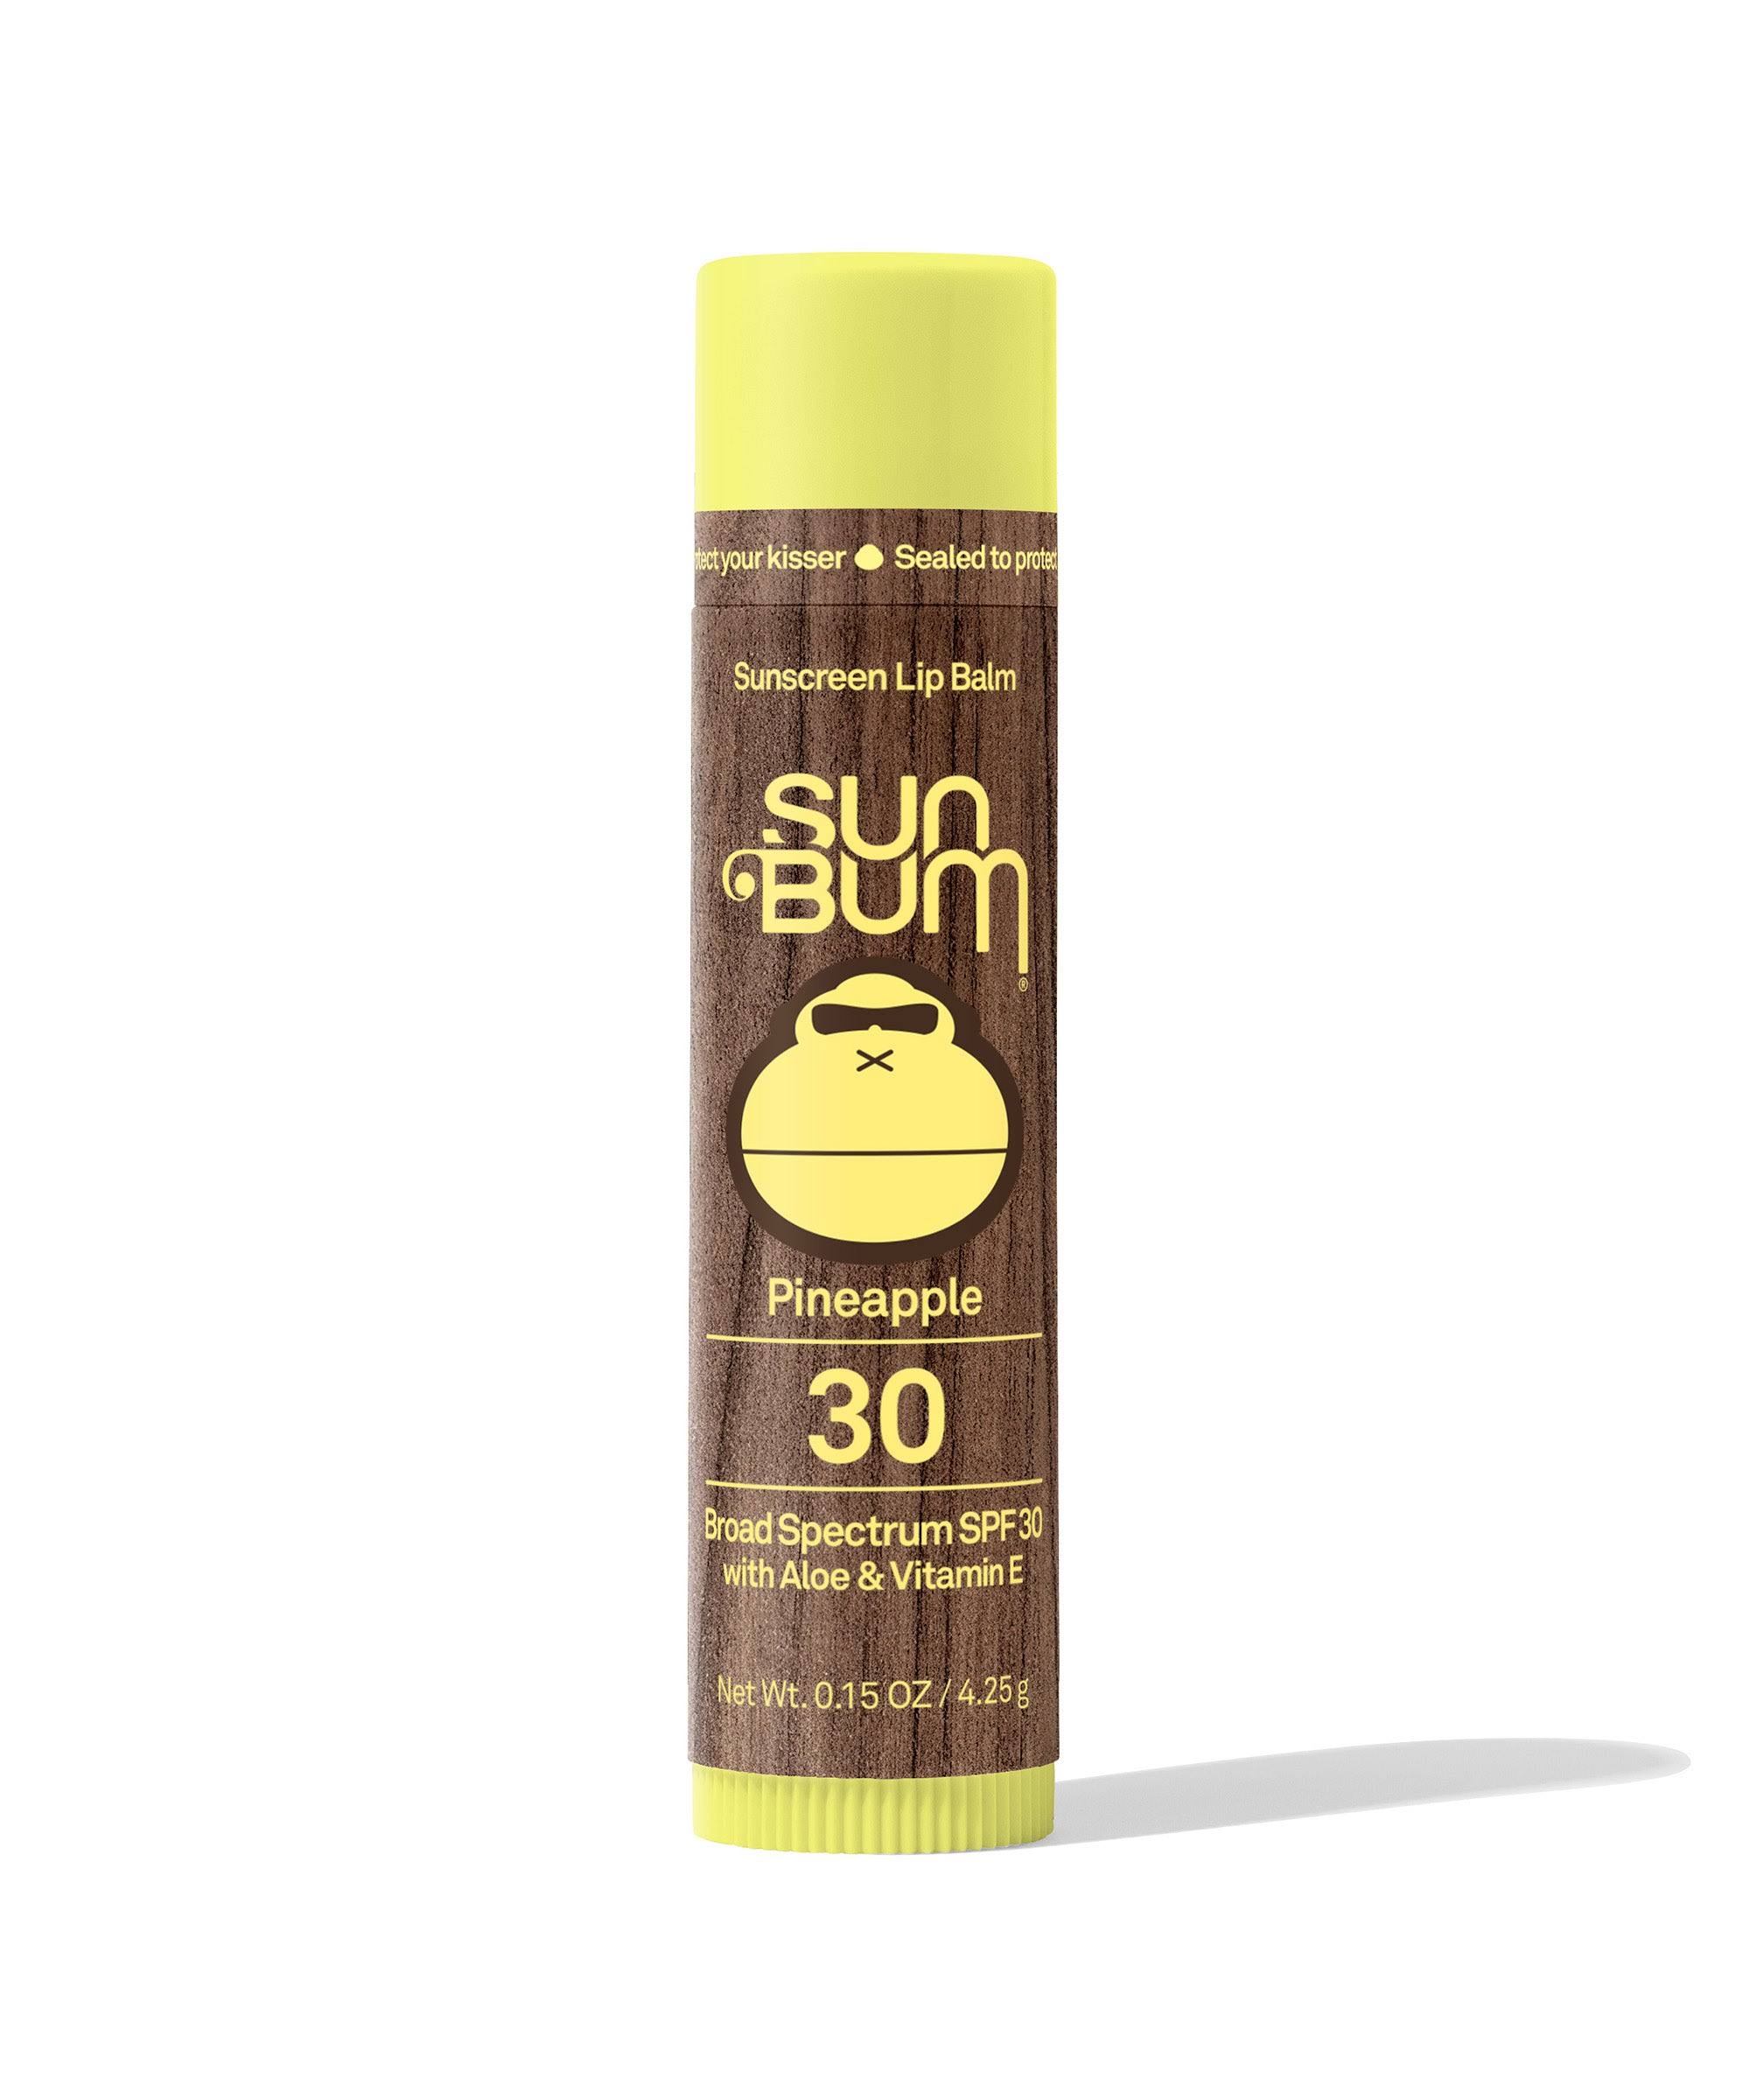 Sun Bum Sunscreen Lip Balm Pineapple 30 SPF 0.15 OZ.